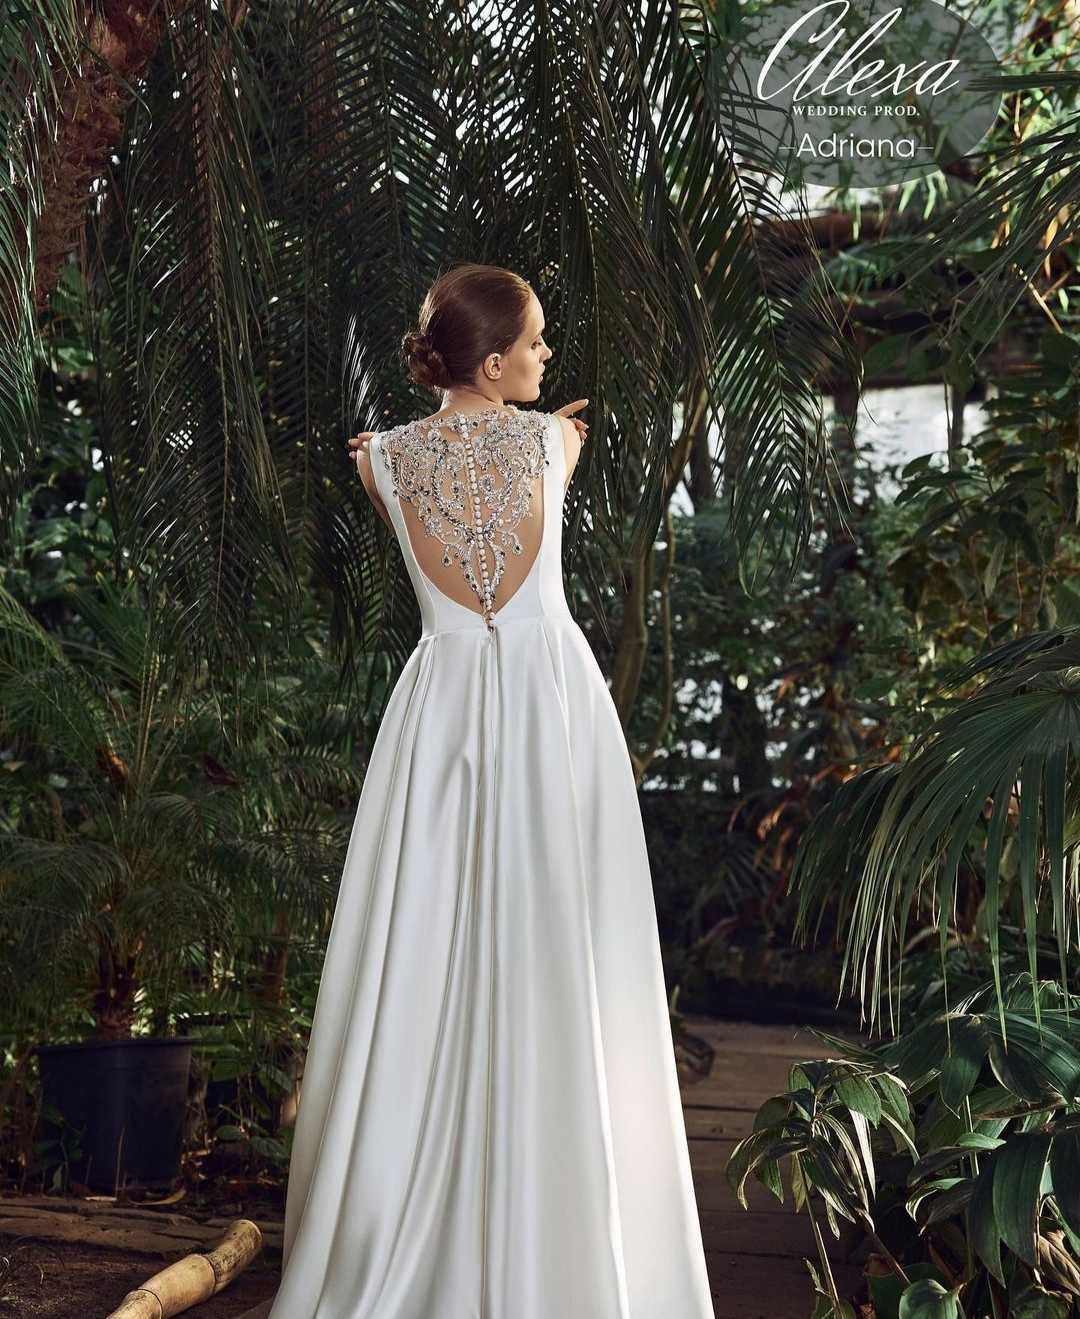 Весільна сукня з атласу